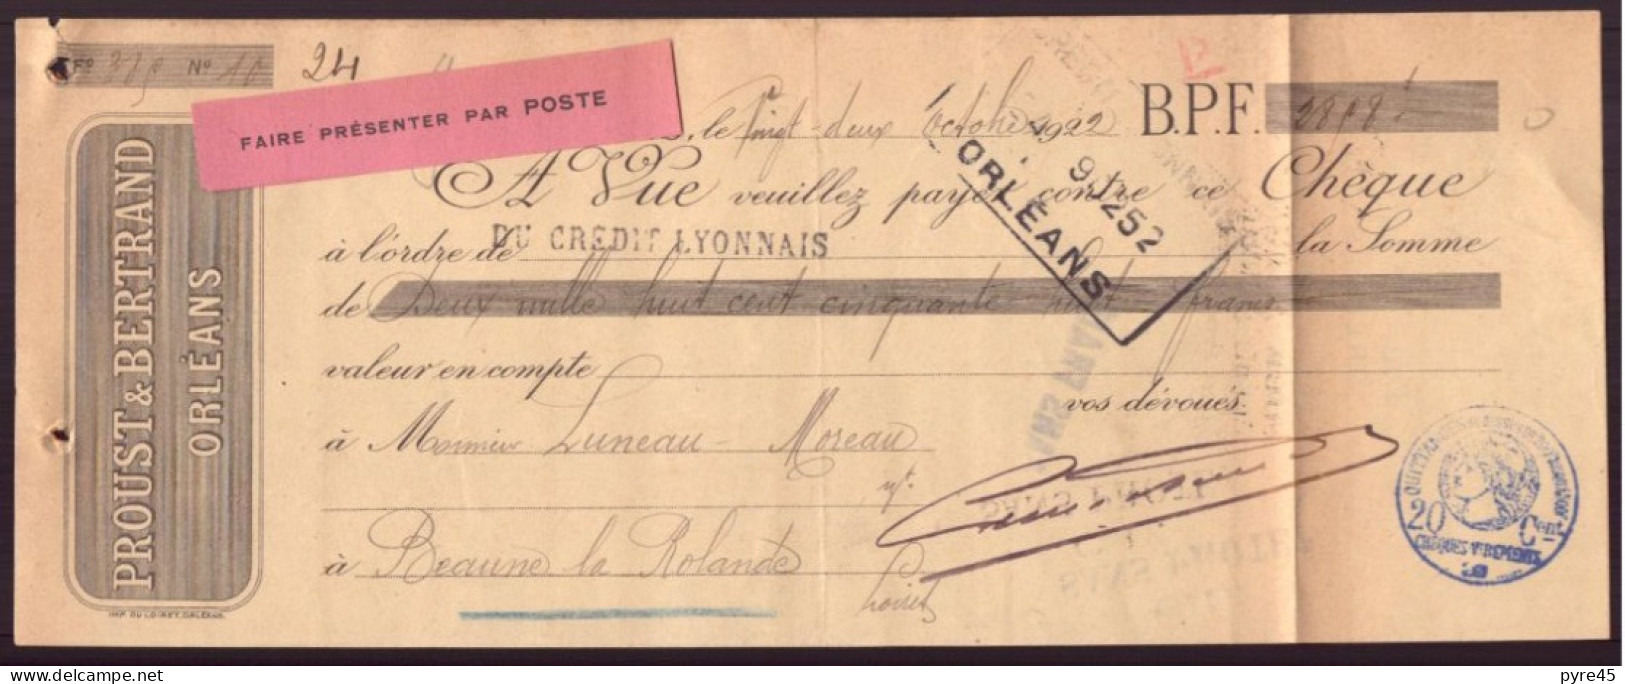 CHEQUE DU 22 / 10 / 1922 PROUST BERTRAND A ORLEANS - Chèques & Chèques De Voyage